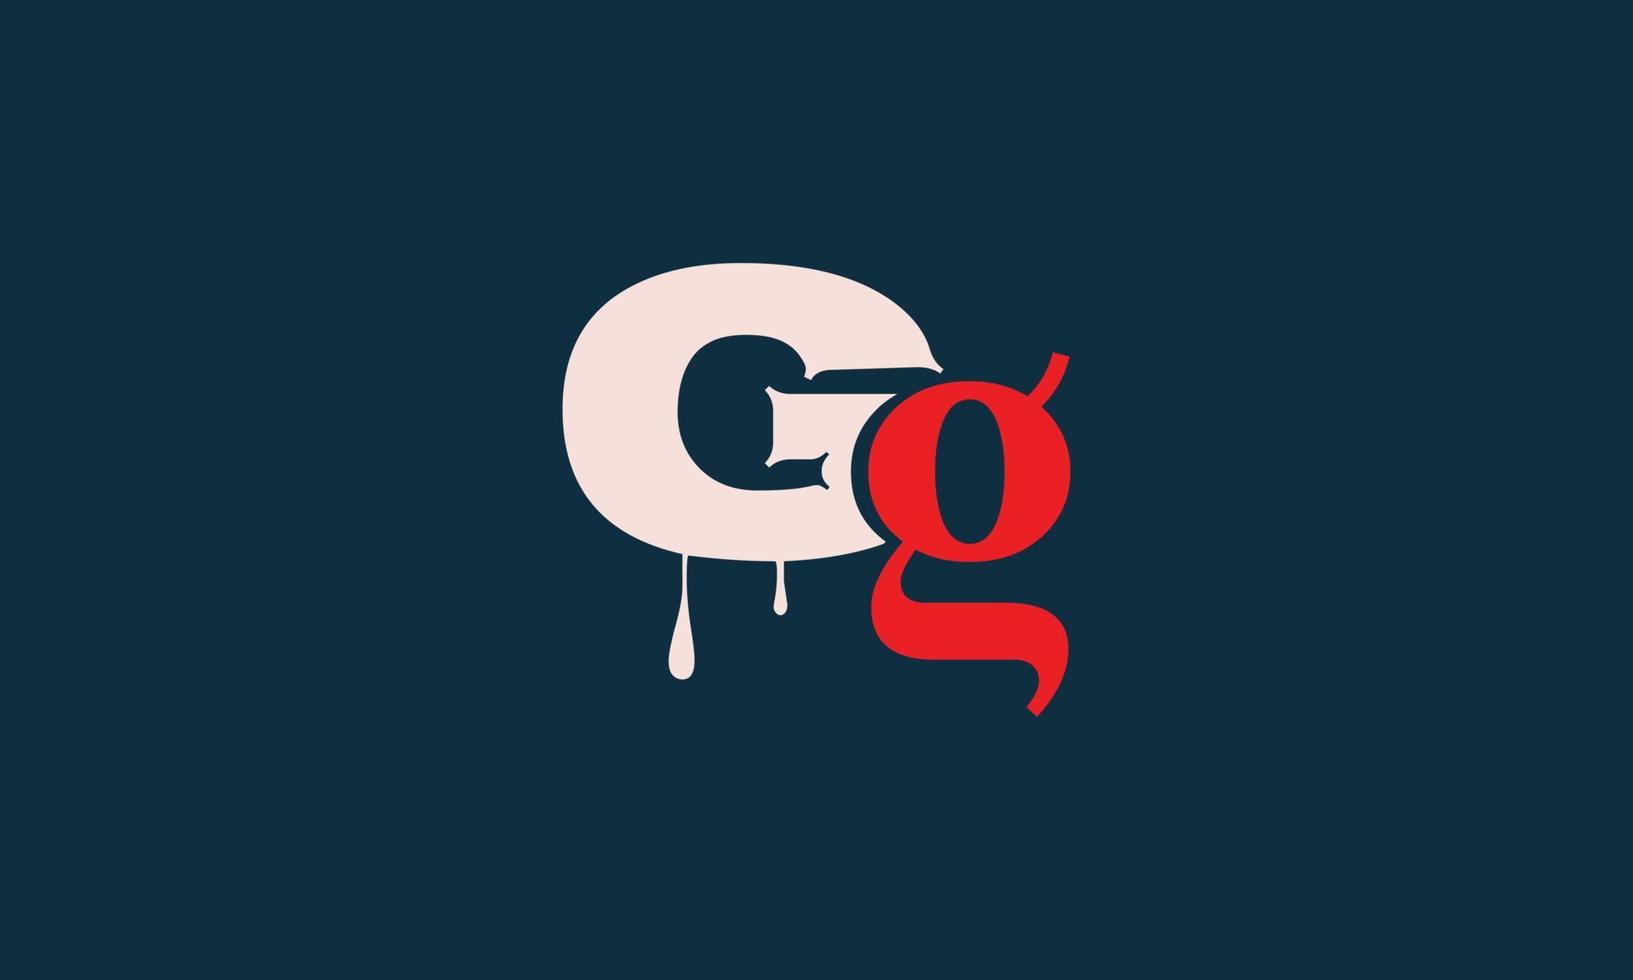 letras do alfabeto iniciais monograma logotipo gg, g e g vetor